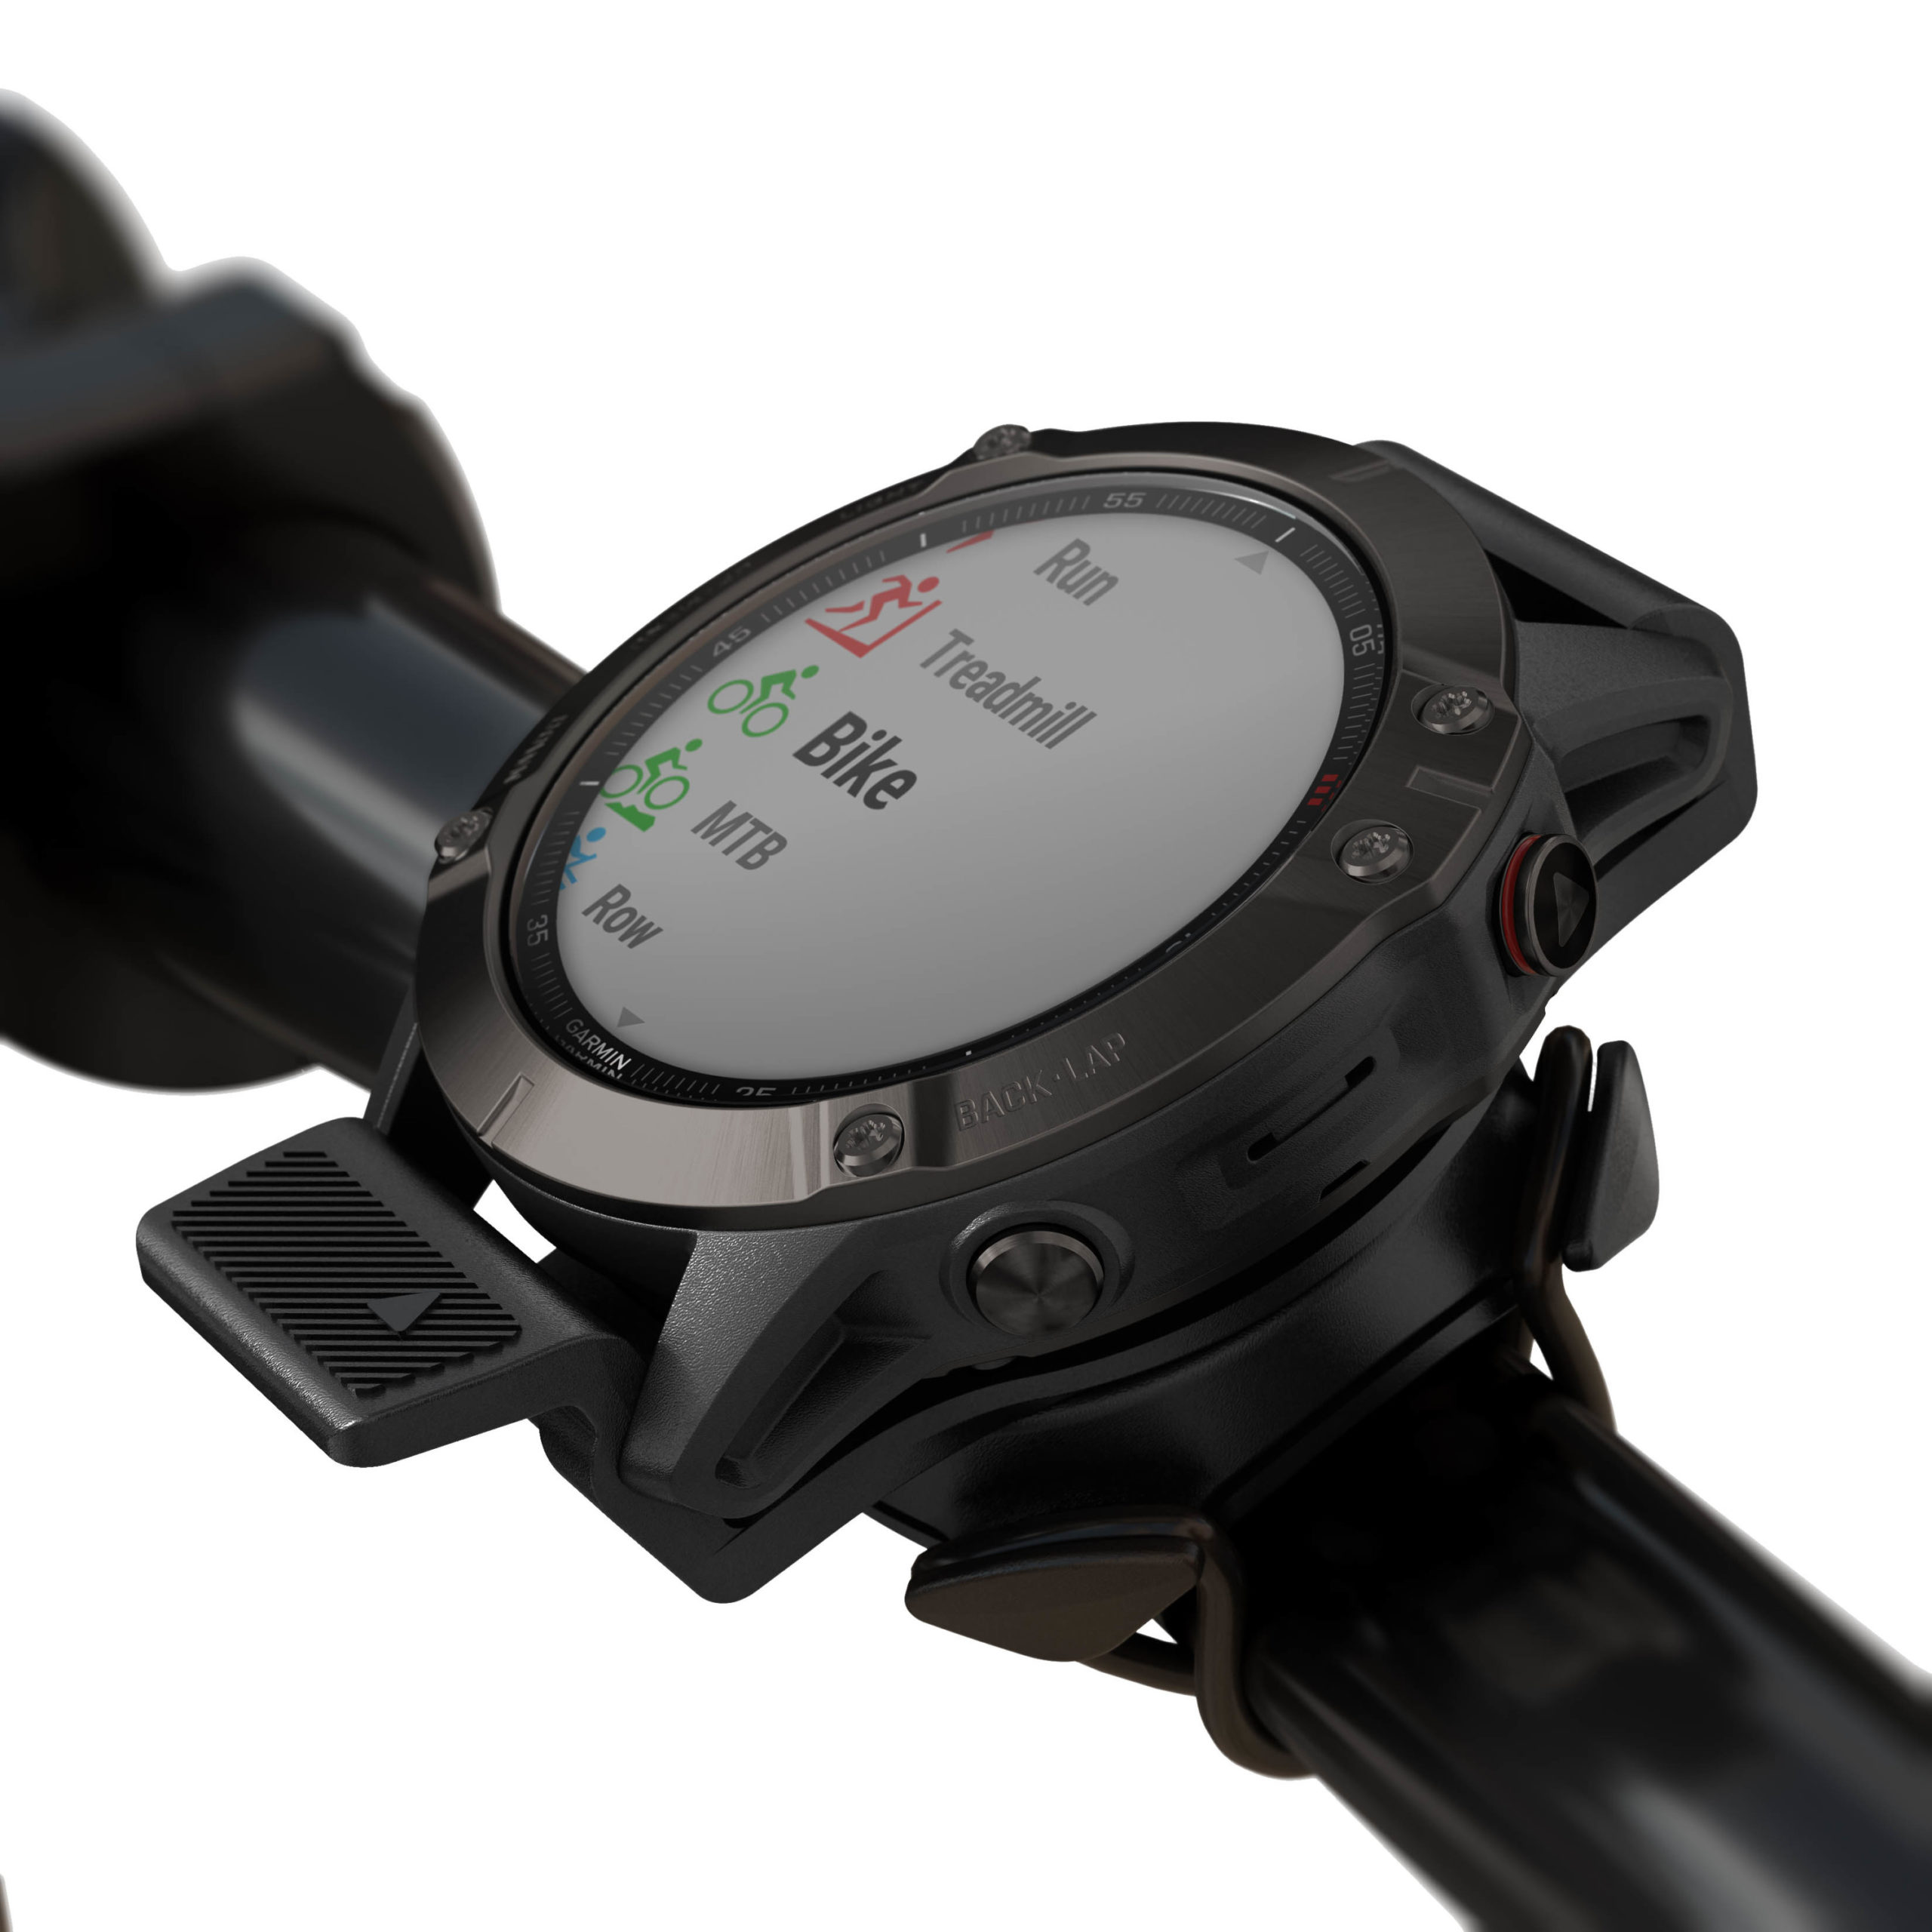 Garmin fēnix 6-Smartwatch: Halterung fürs Bike ab sofort erhältlich -  MTB-News.de